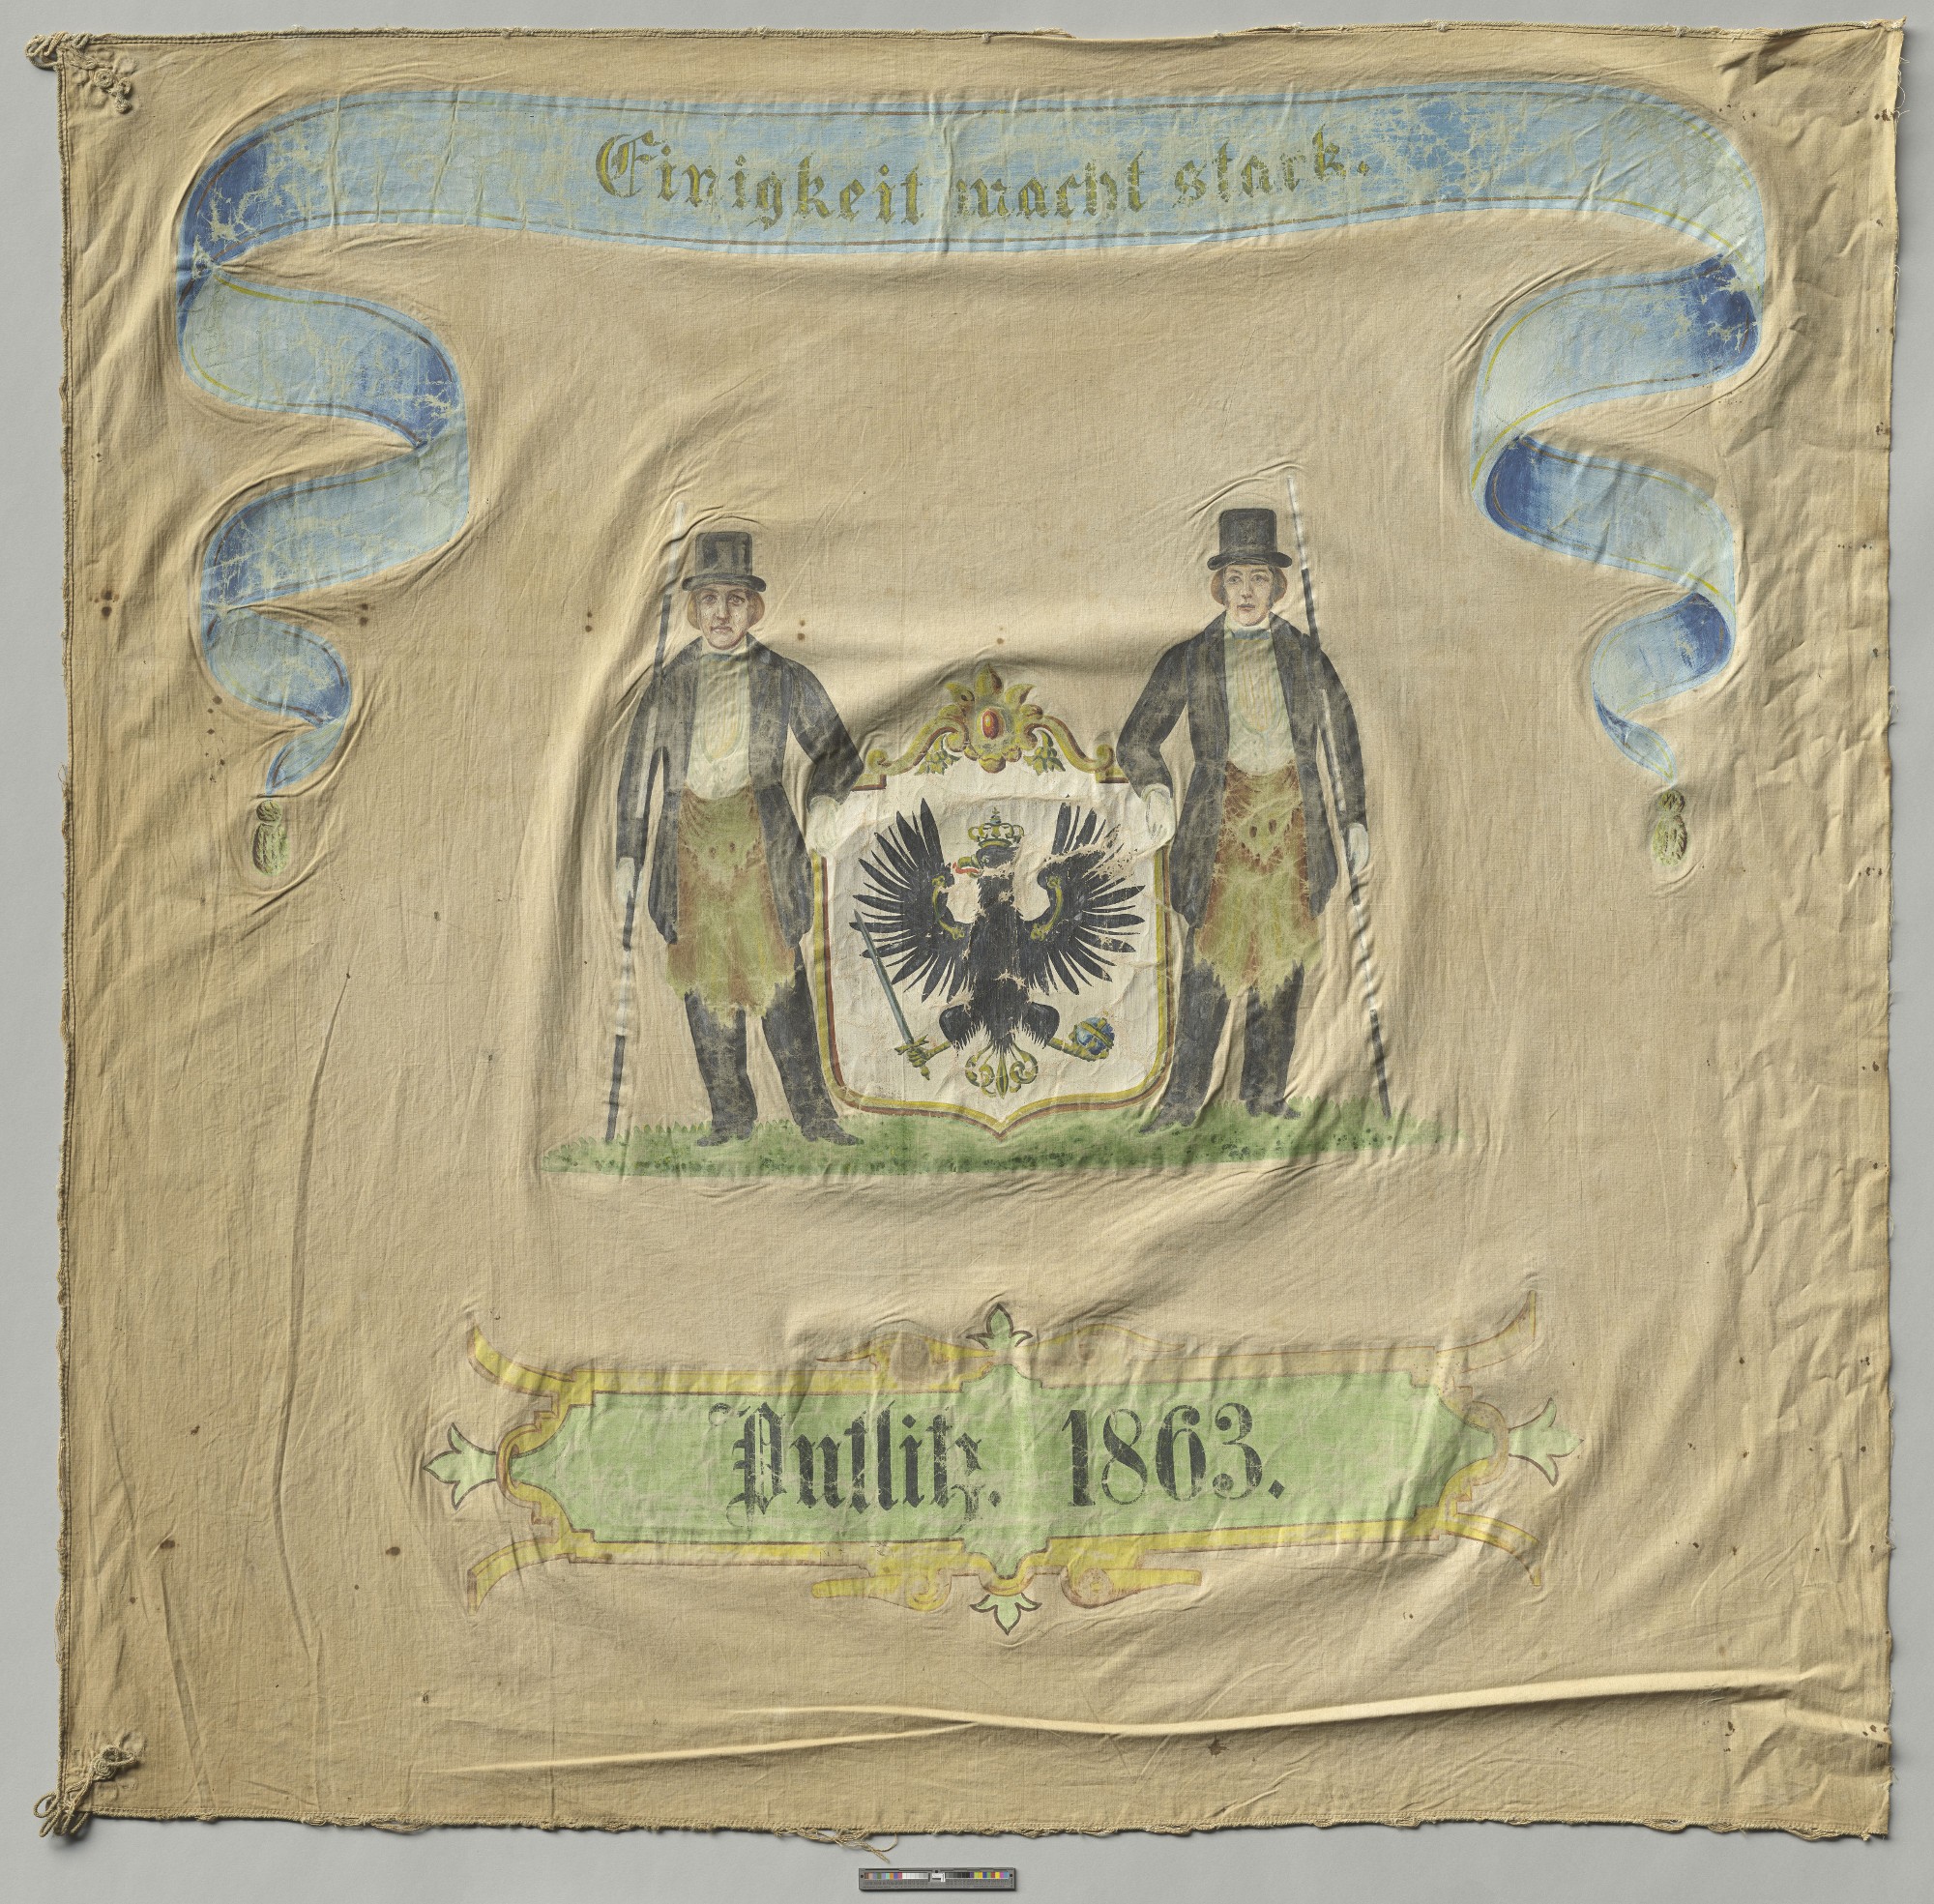 Fahne des Maurergewerks der Stadt Putlitz 1863 (Museumsfabrik Pritzwalk CC BY-NC-SA)